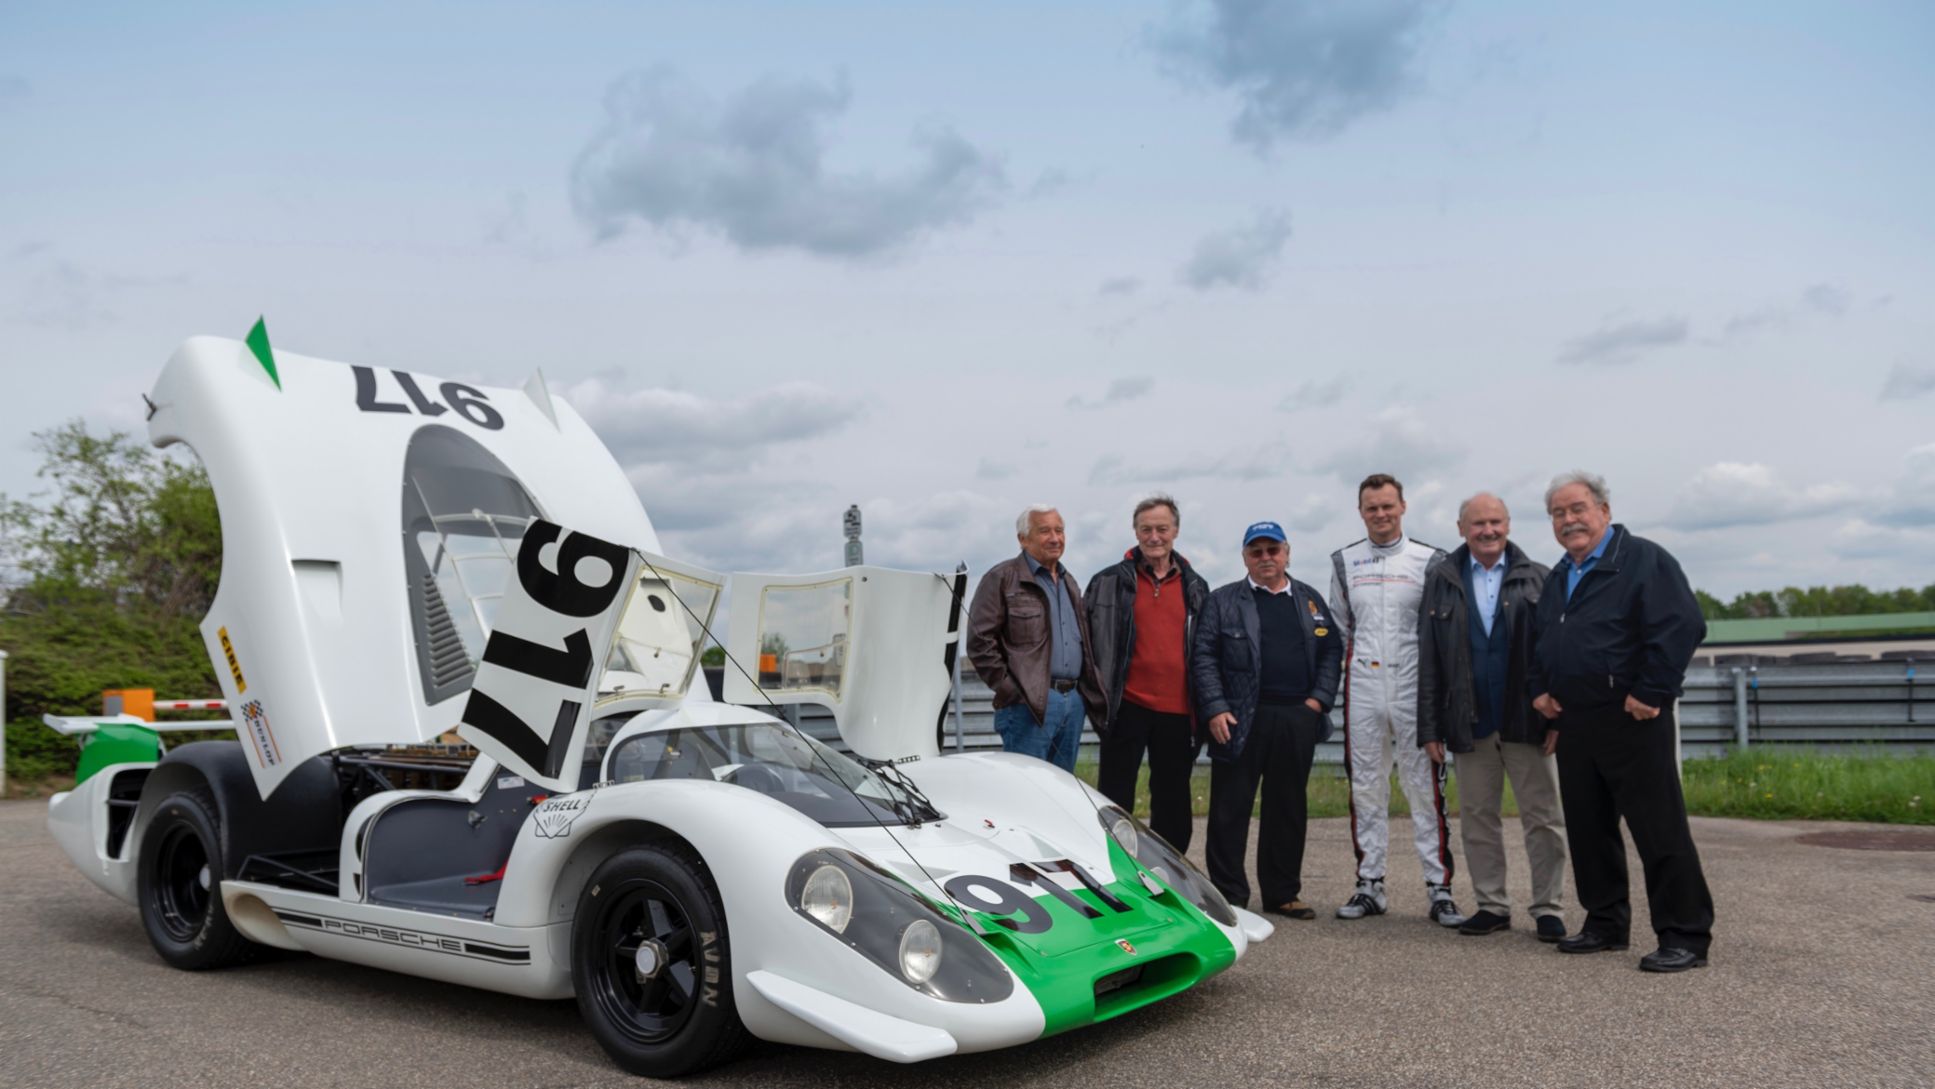 Roland Bemsel, Gerhard Küchle, Kurt Ahrens, Marc Lieb, Hermann Burst, Klaus Ziegler, l-r, 917-001, 2019, Porsche AG 